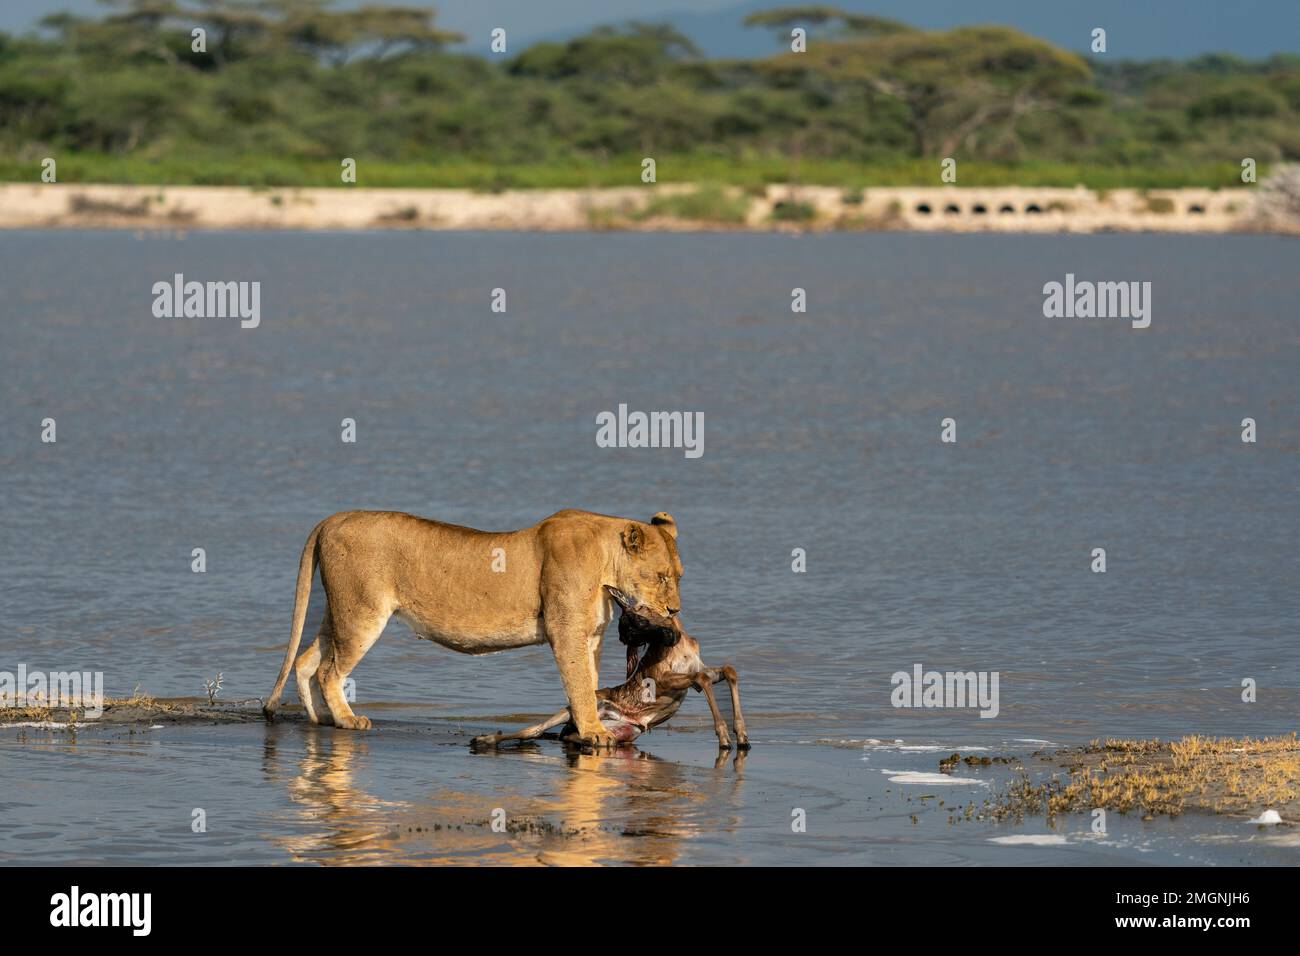 Une lioness (Panthera leo) apporte au bord du lac un veau impala frais chassé (Aepyceros melampus), zone de conservation de Ndutu, Serengeti, Tanzanie. Banque D'Images